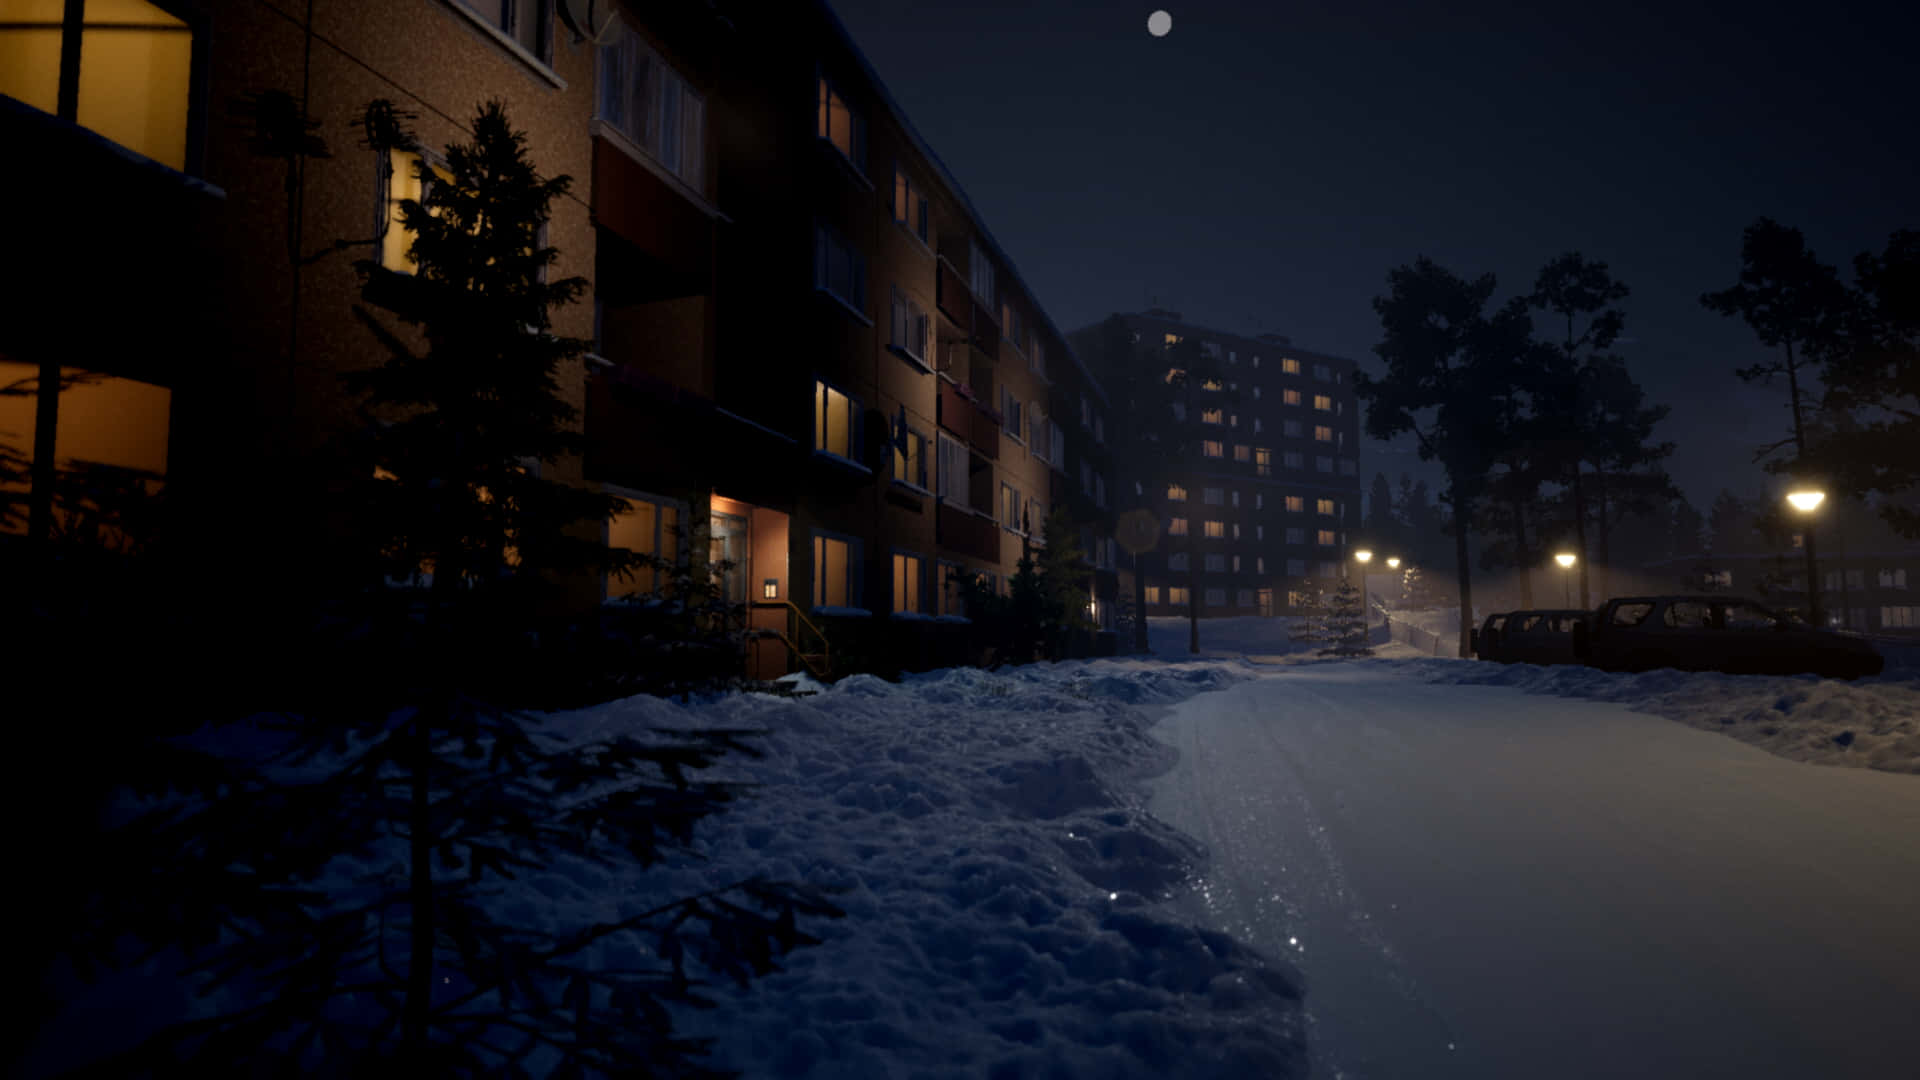 Eineverschneite Straße Mit Gebäuden Und Lichtern In Der Nacht Wallpaper